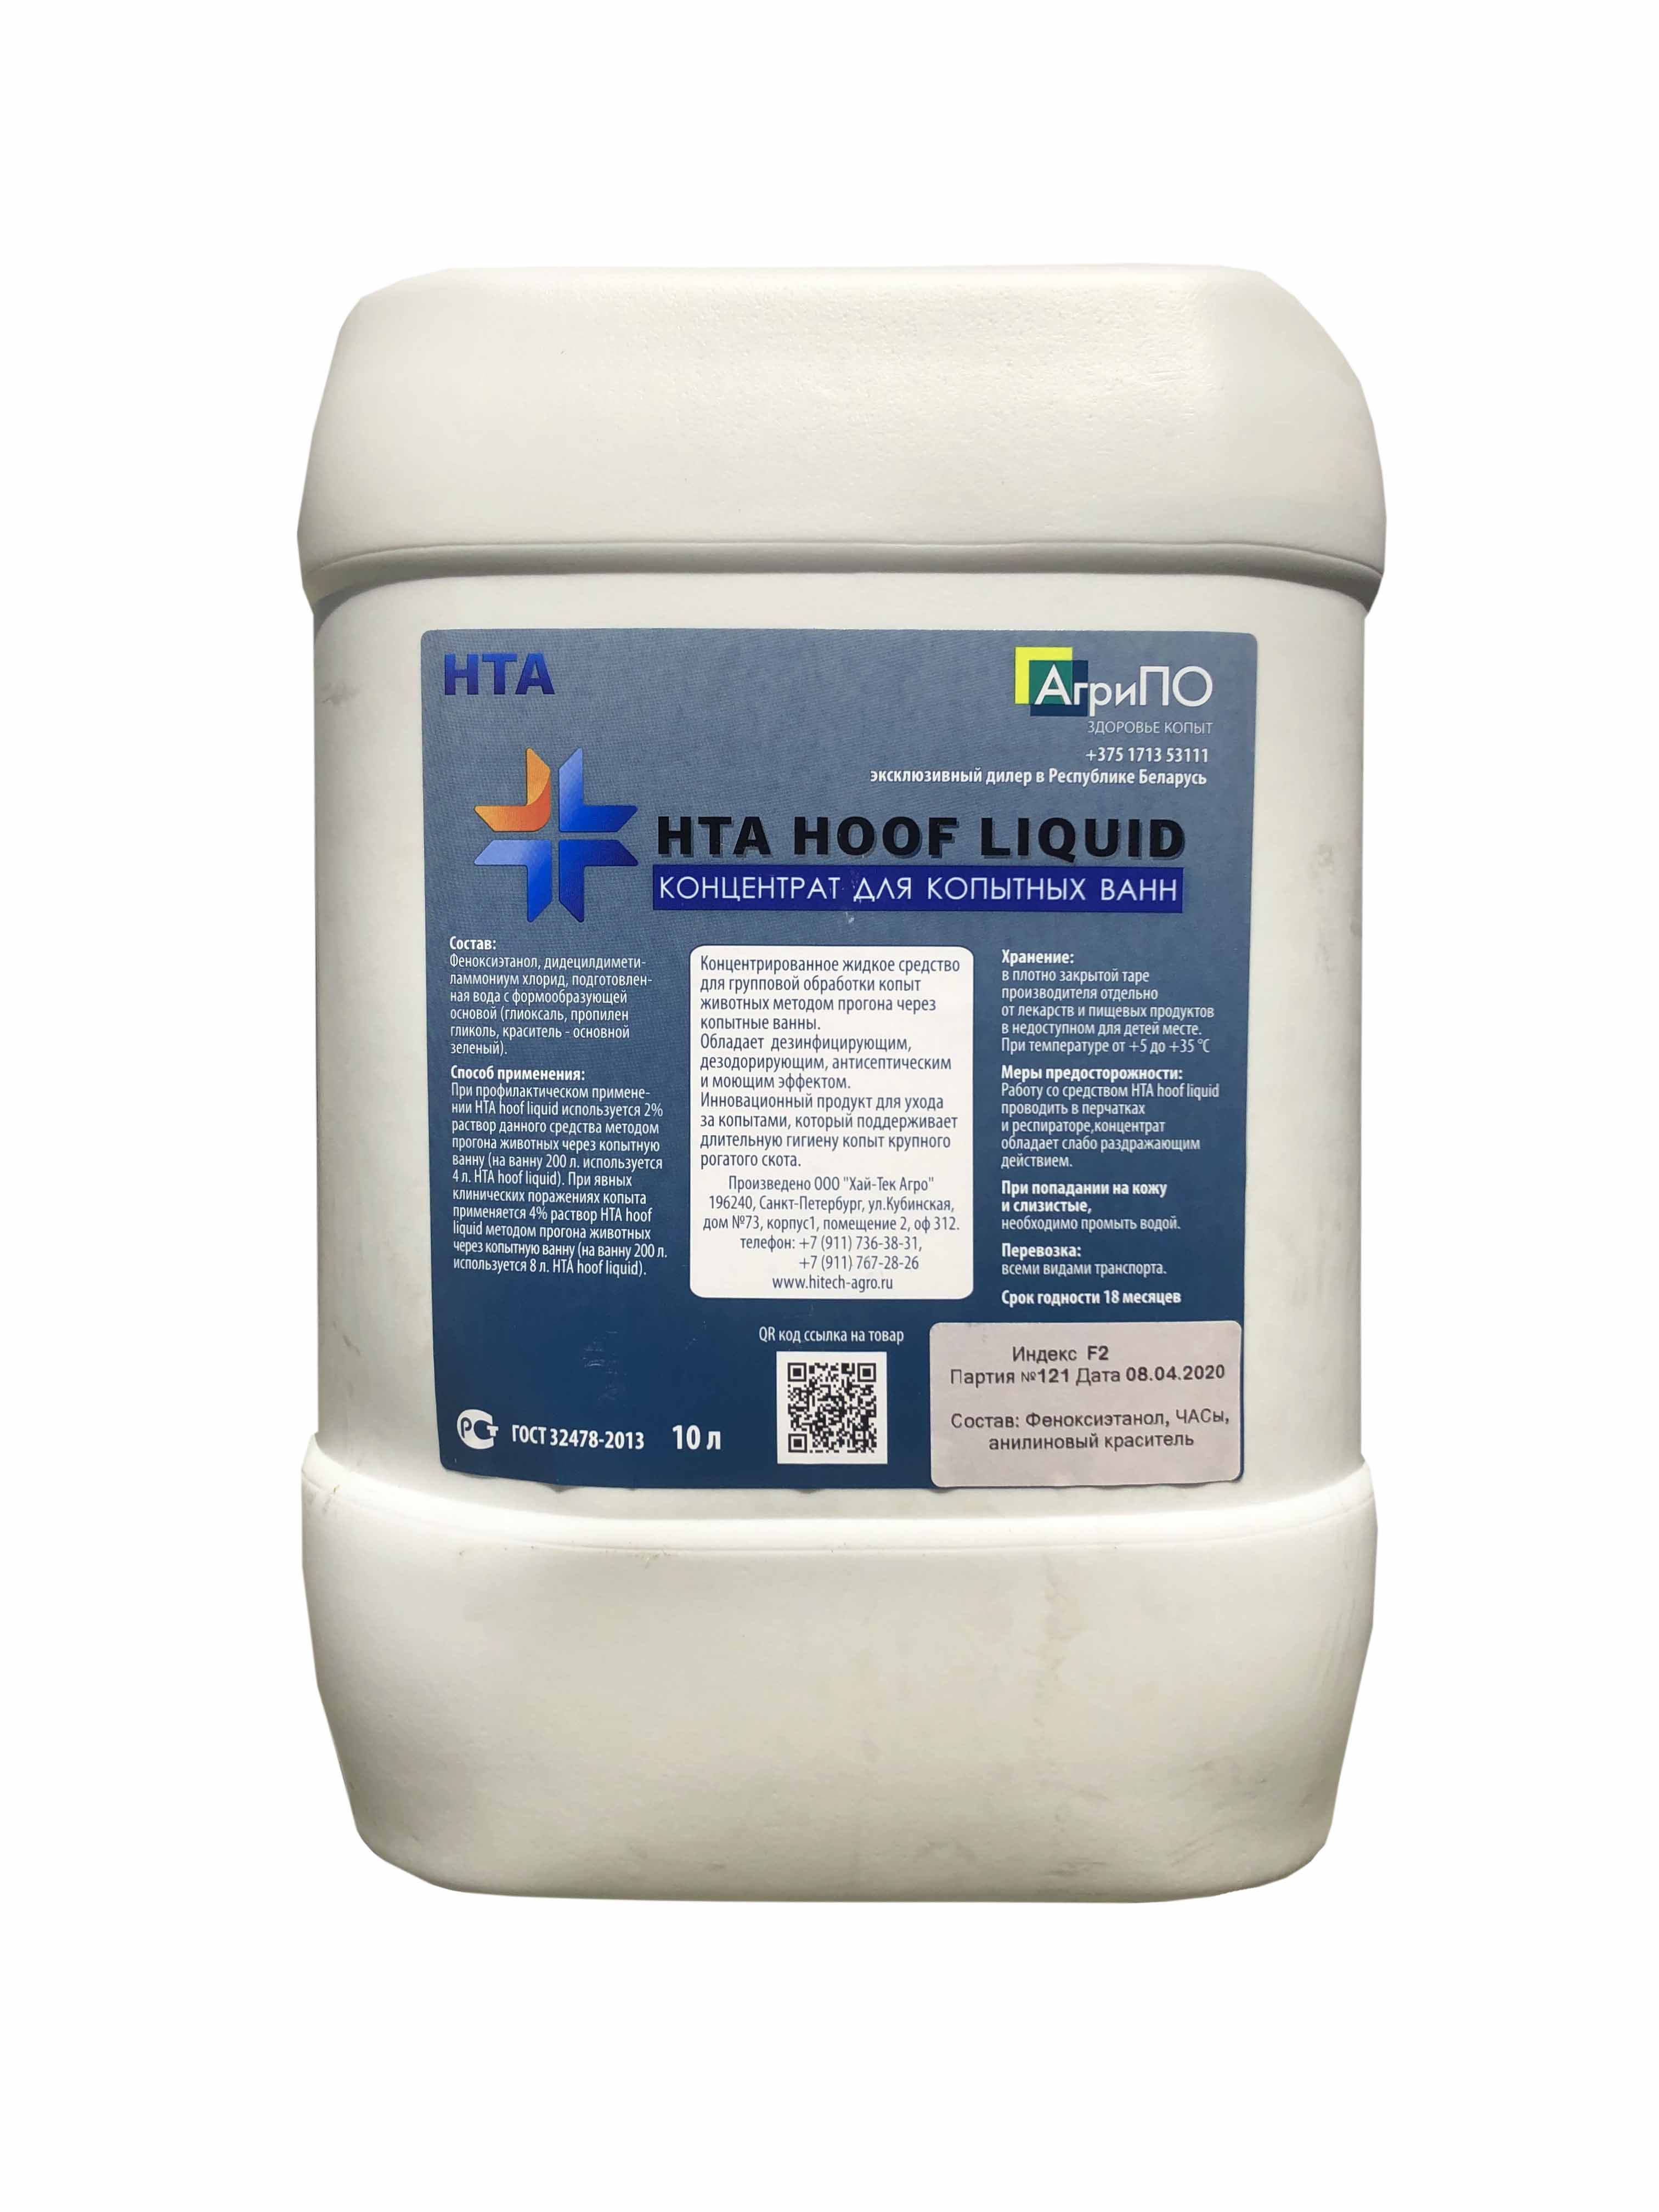 Средство для копытных ванн — HTA Hoof Liquid